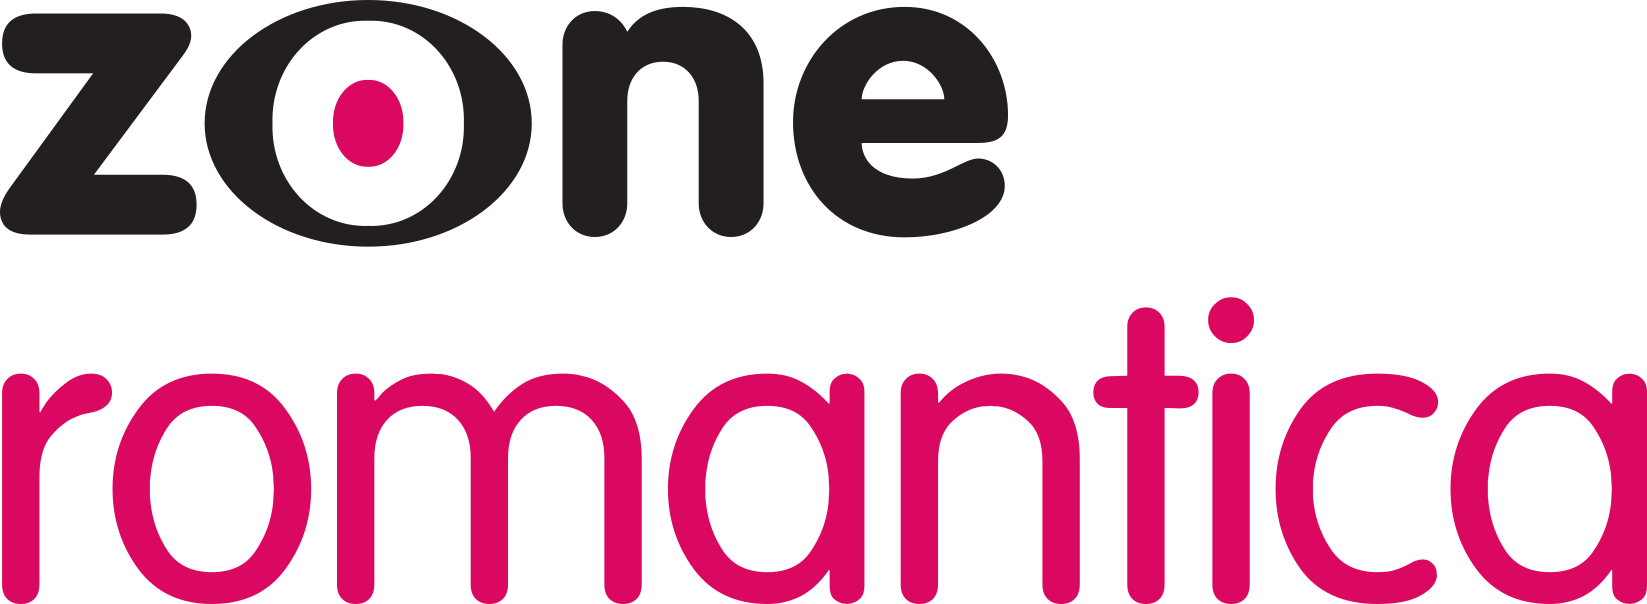 Канал романтика. Телеканал романтика. Логотип телеканала романтичное. Канал романтика логотип. Zone Romantica (uk).